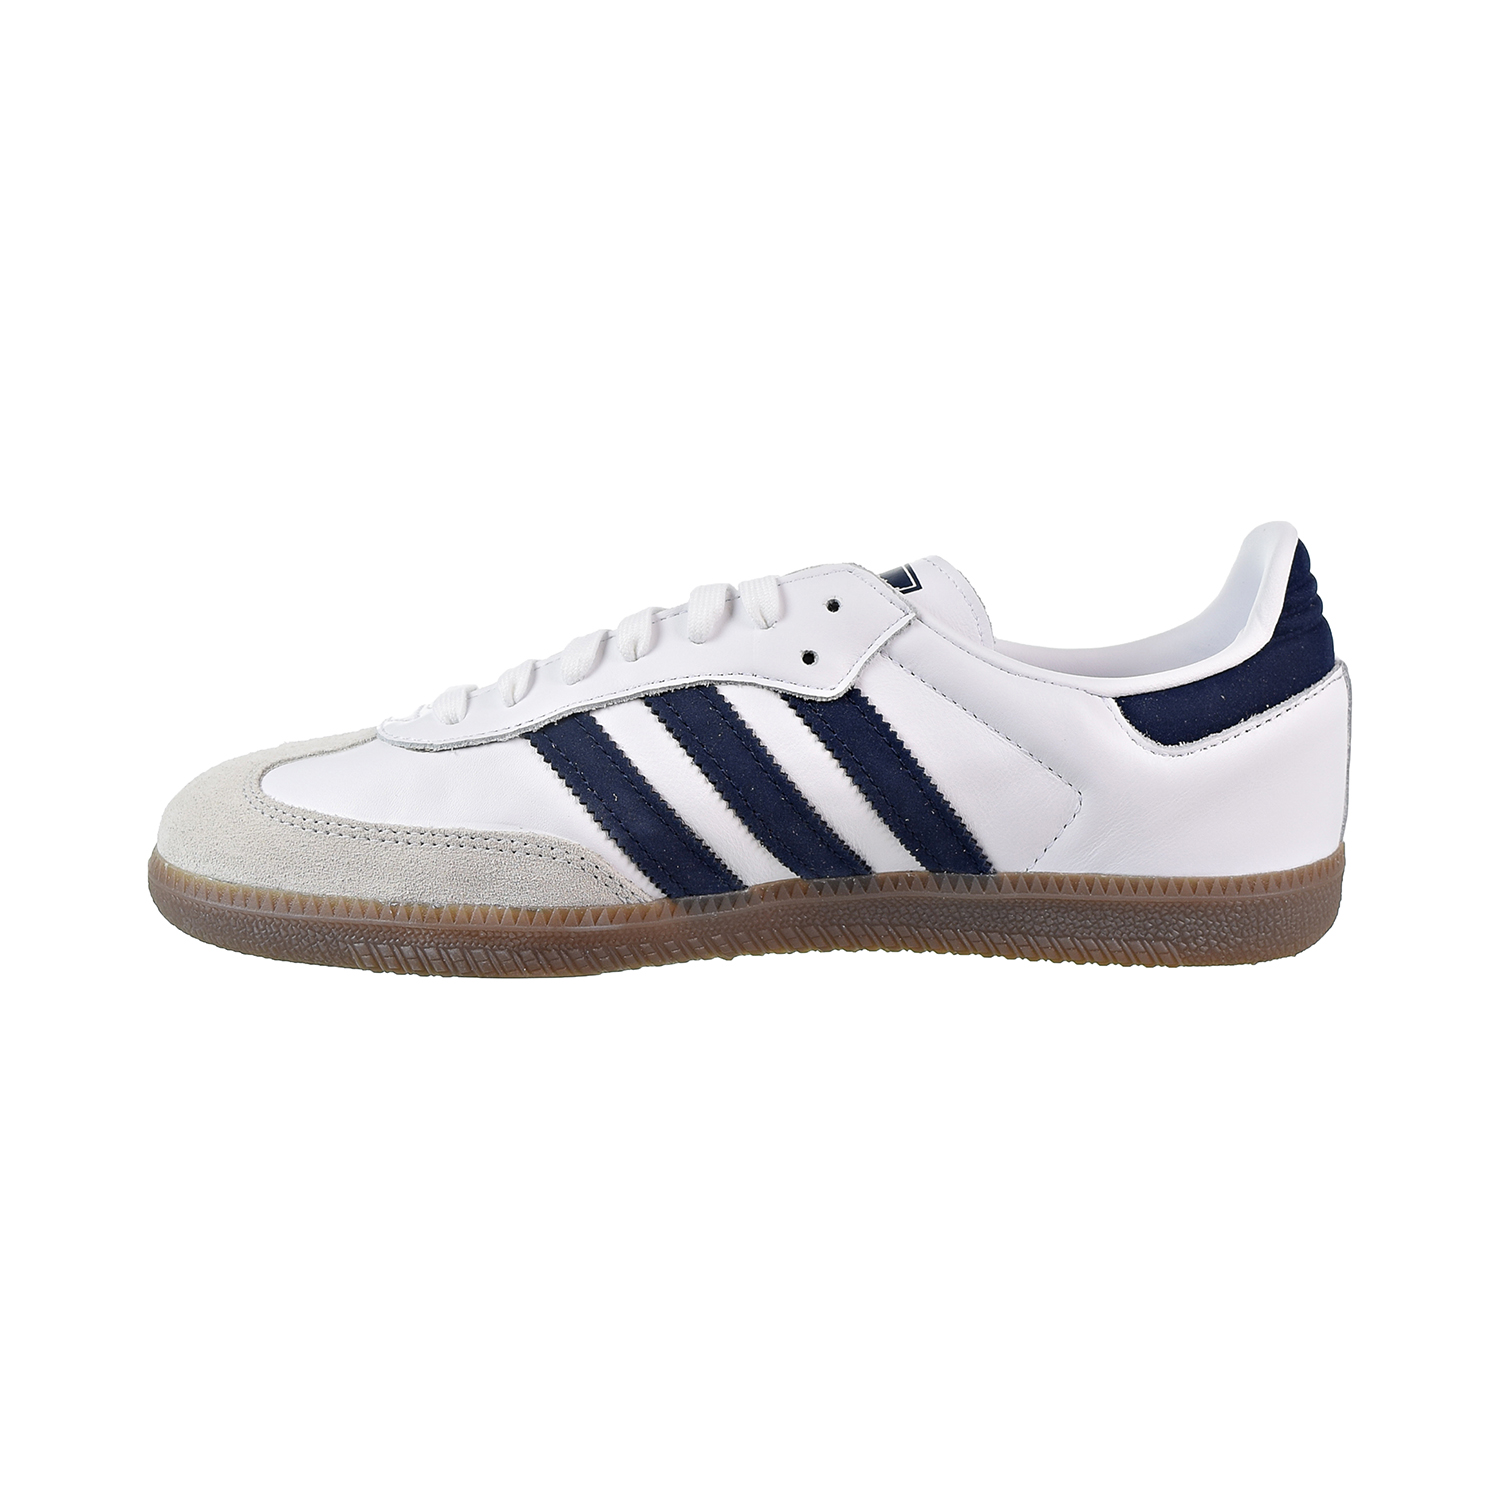 Adidas Samba OG Men's Shoes Cloud White-Collegiate Navy-Crystal White ...